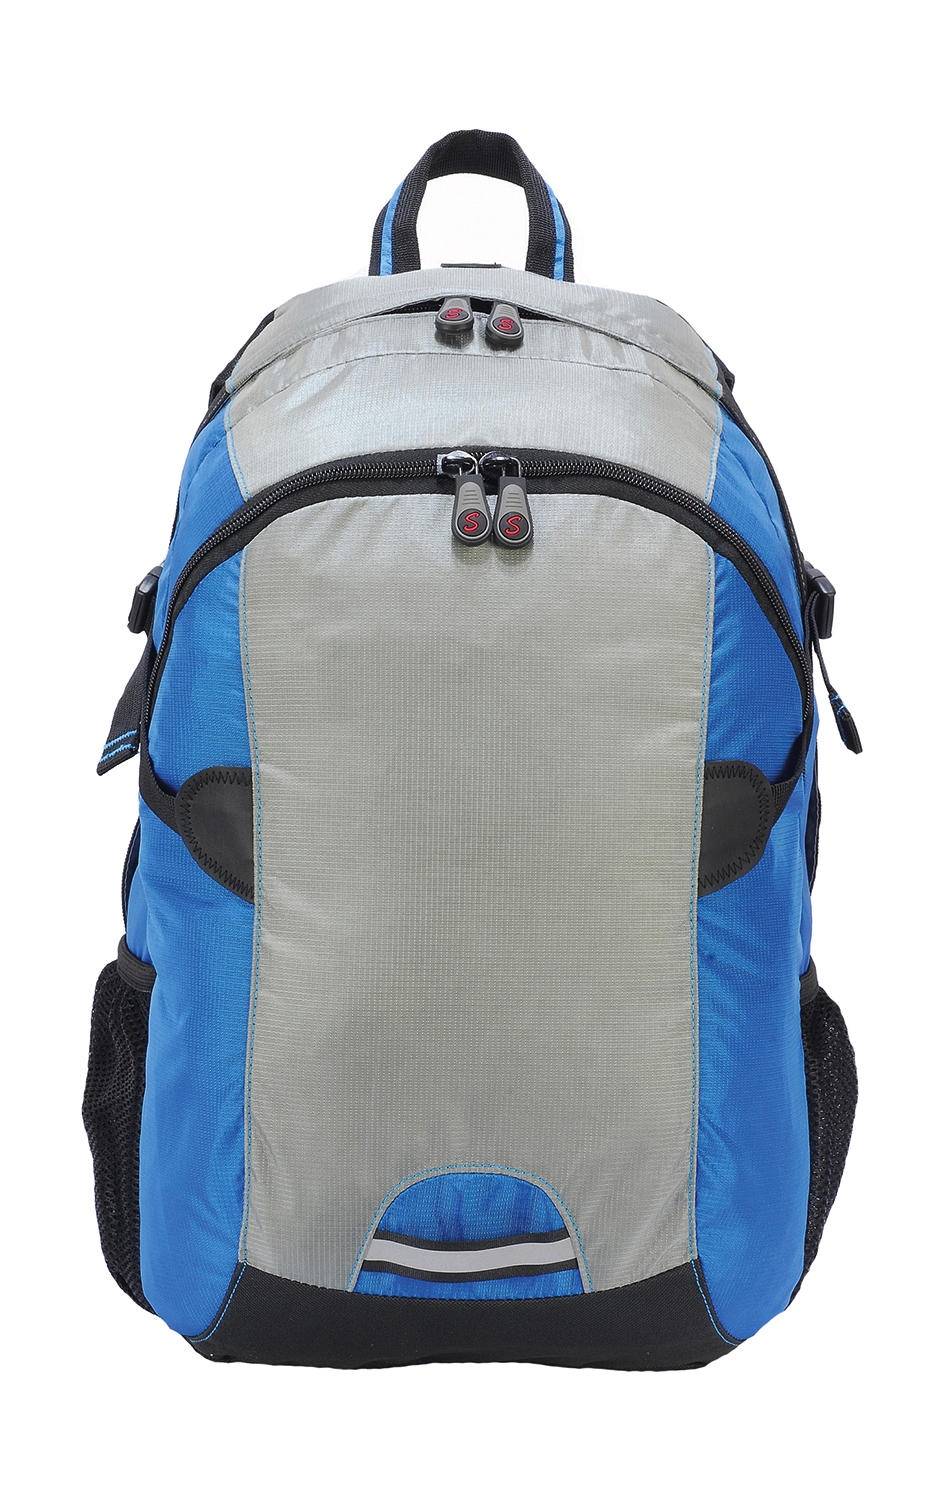 Stylish Backpack Grey/Turquoise Gris